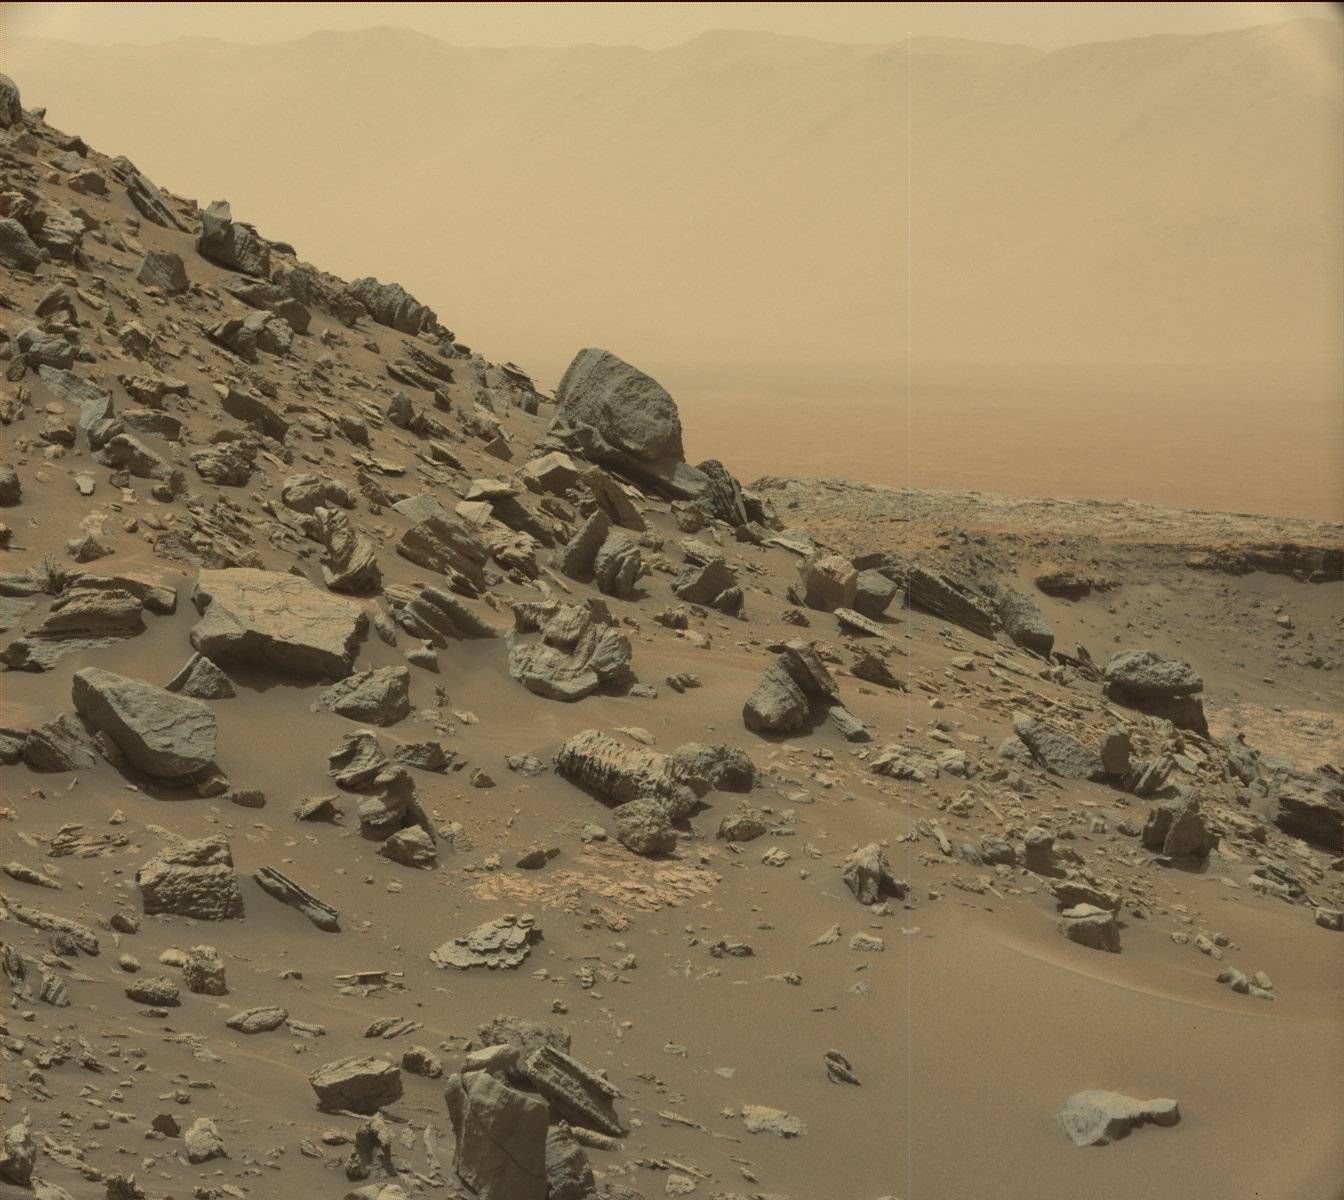 Планината Шарп на Марс